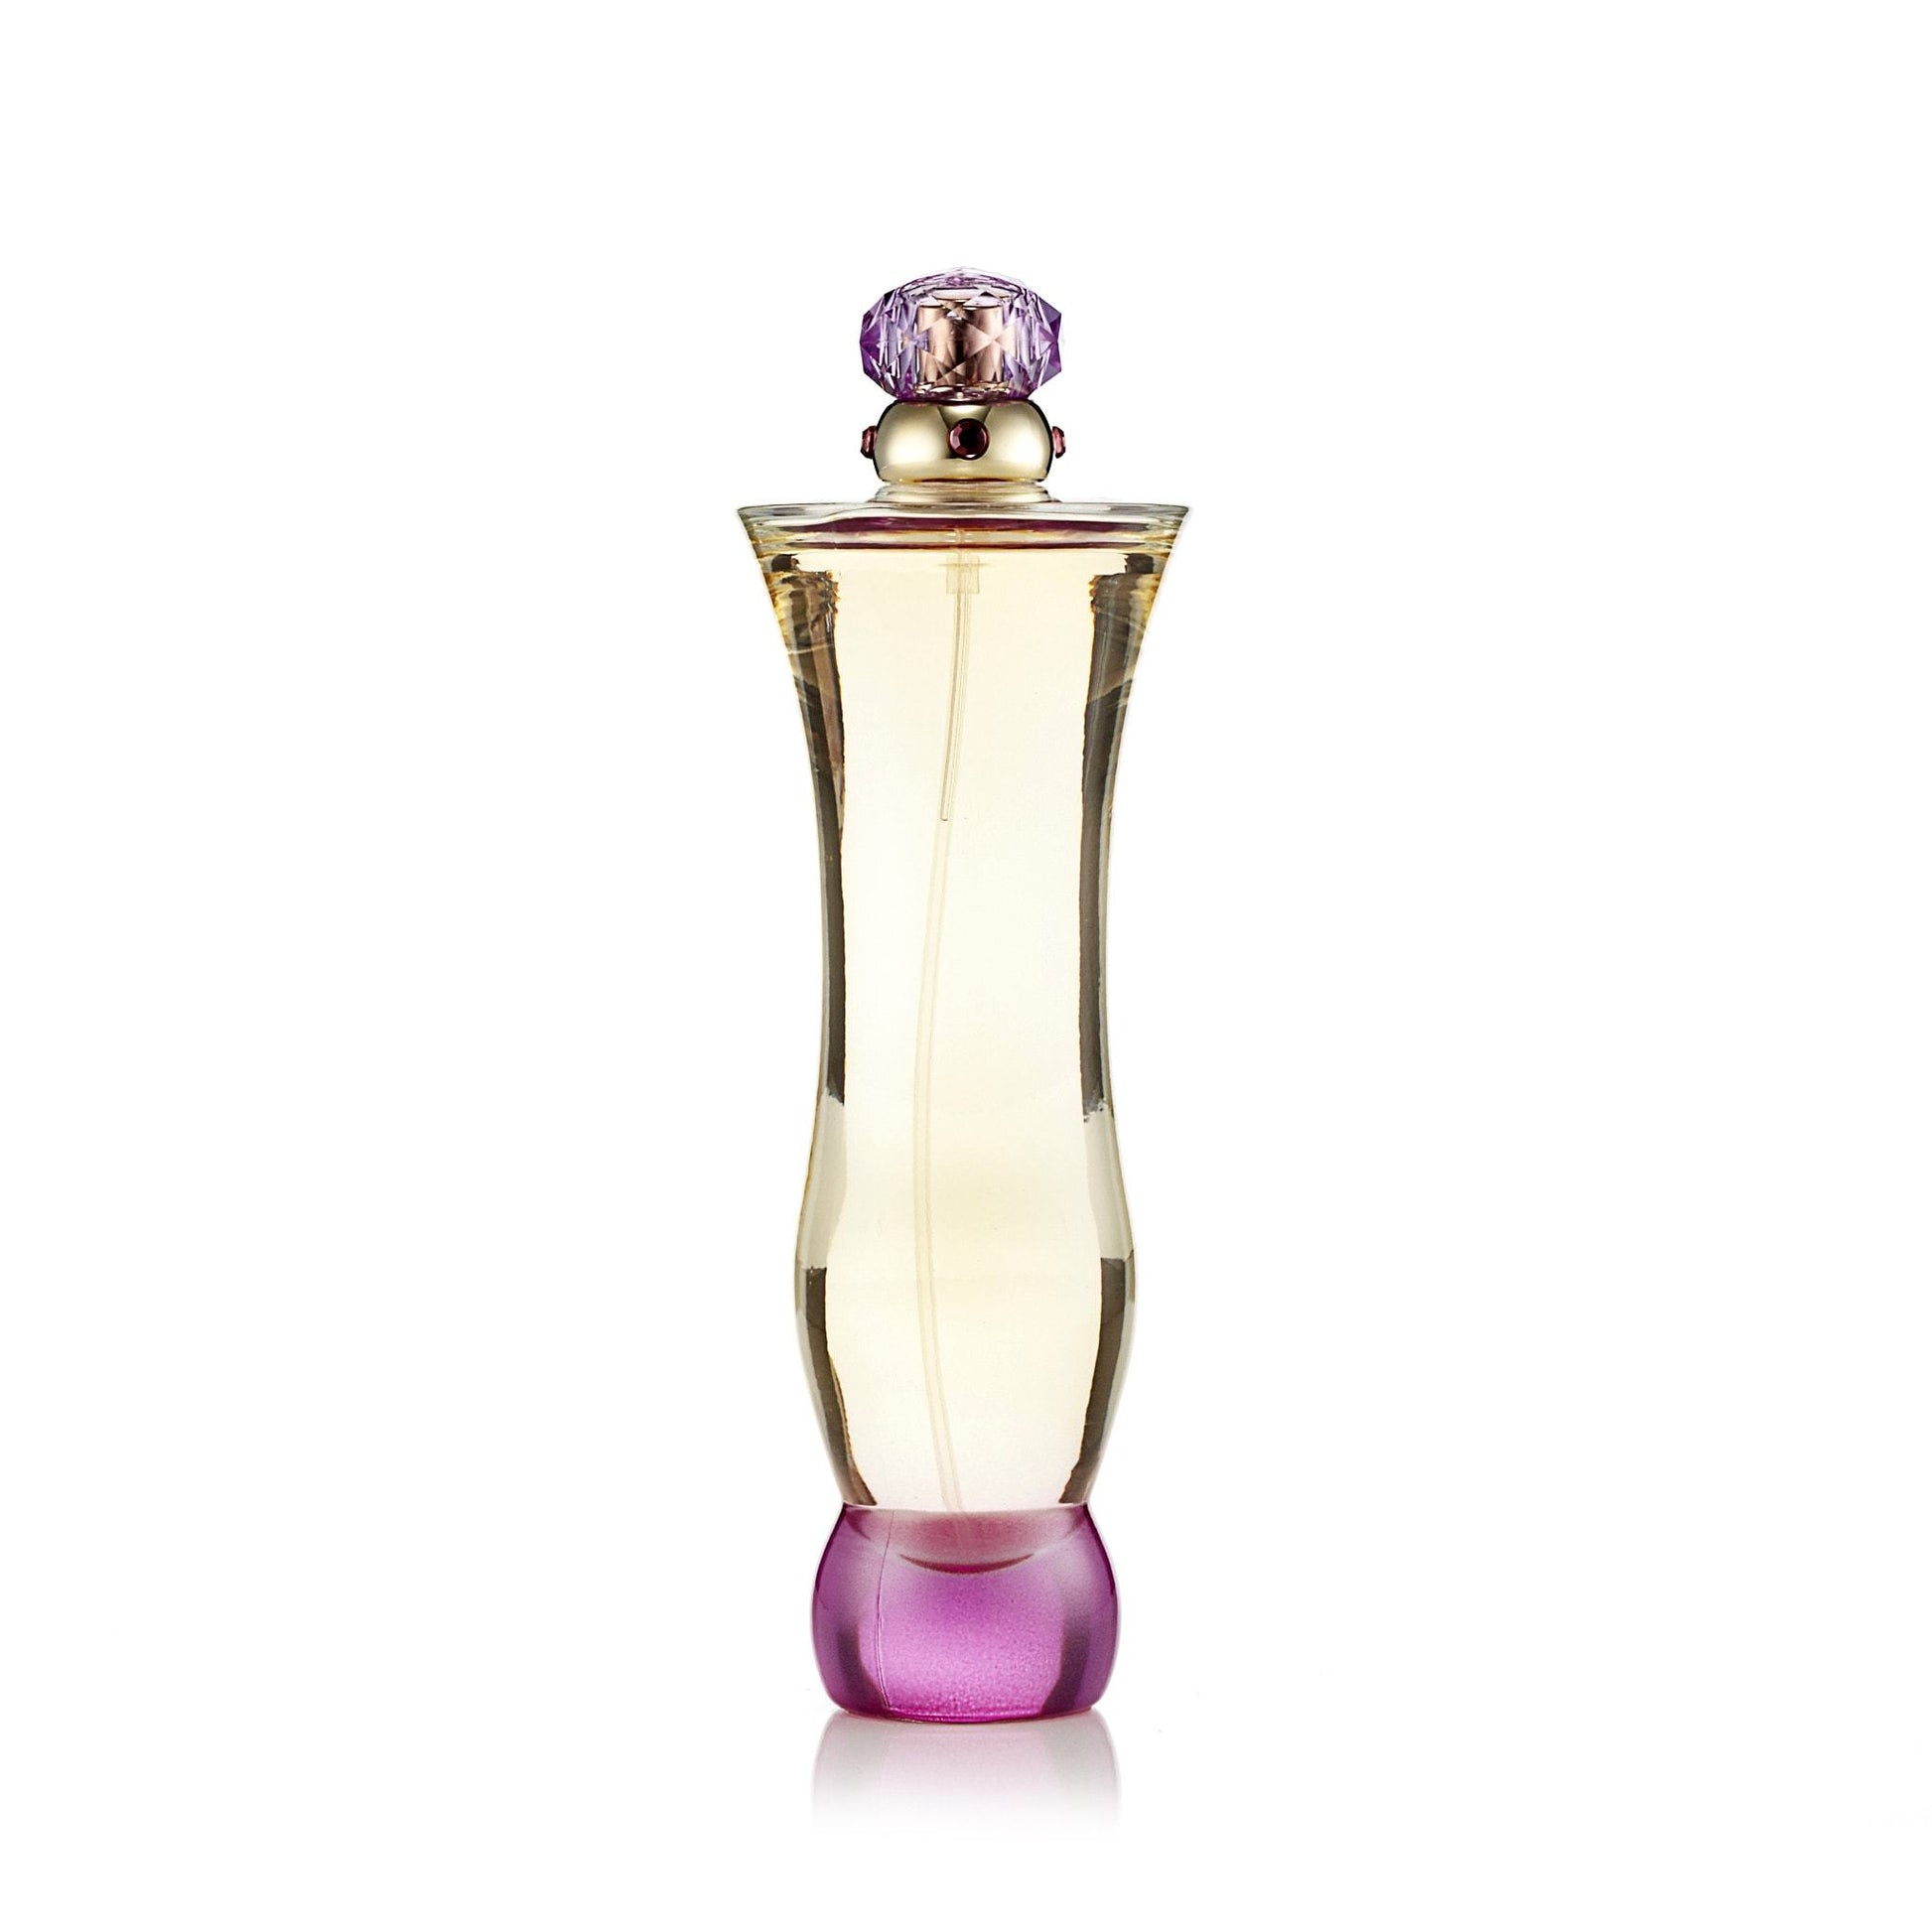 Versace Woman Eau de Parfum Spray for Women by Versace, Product image 1